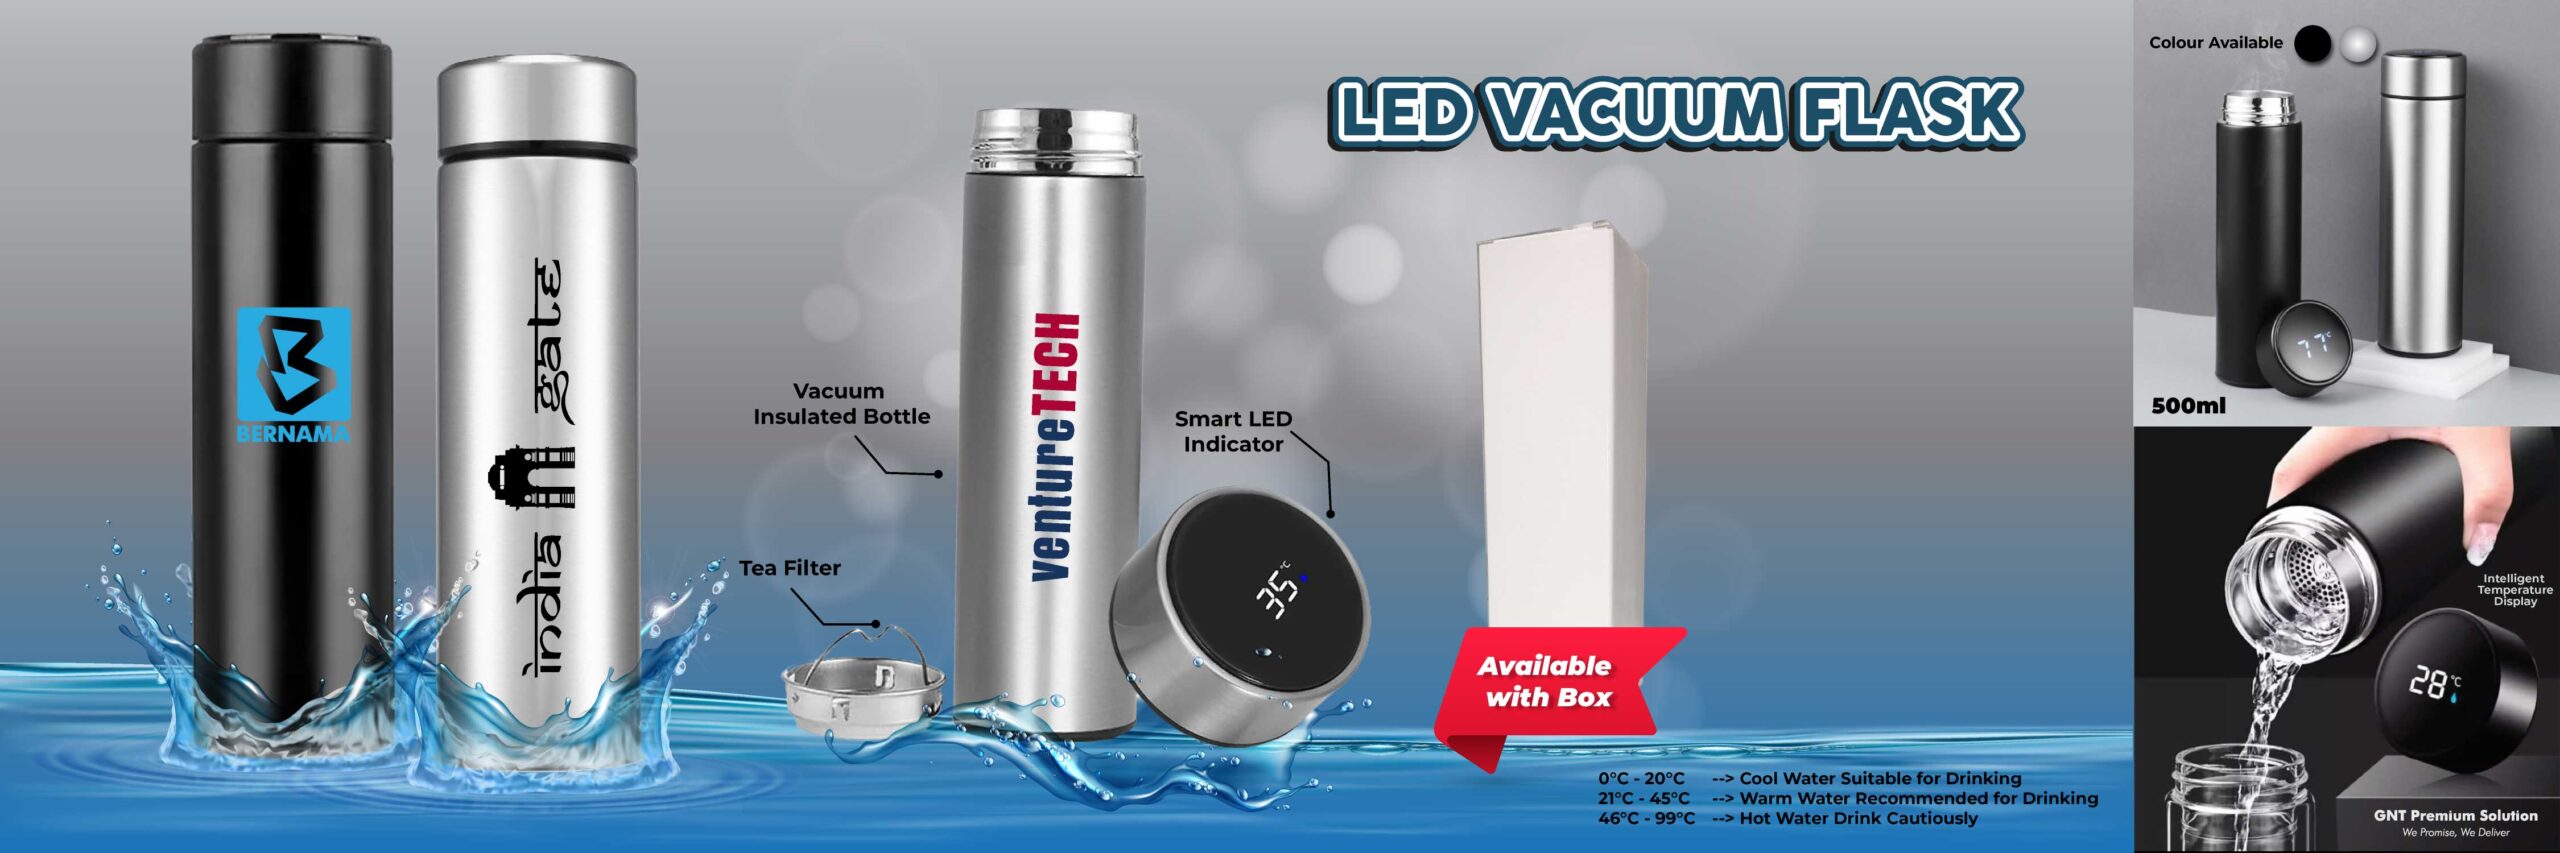 LED Vacuum Flask